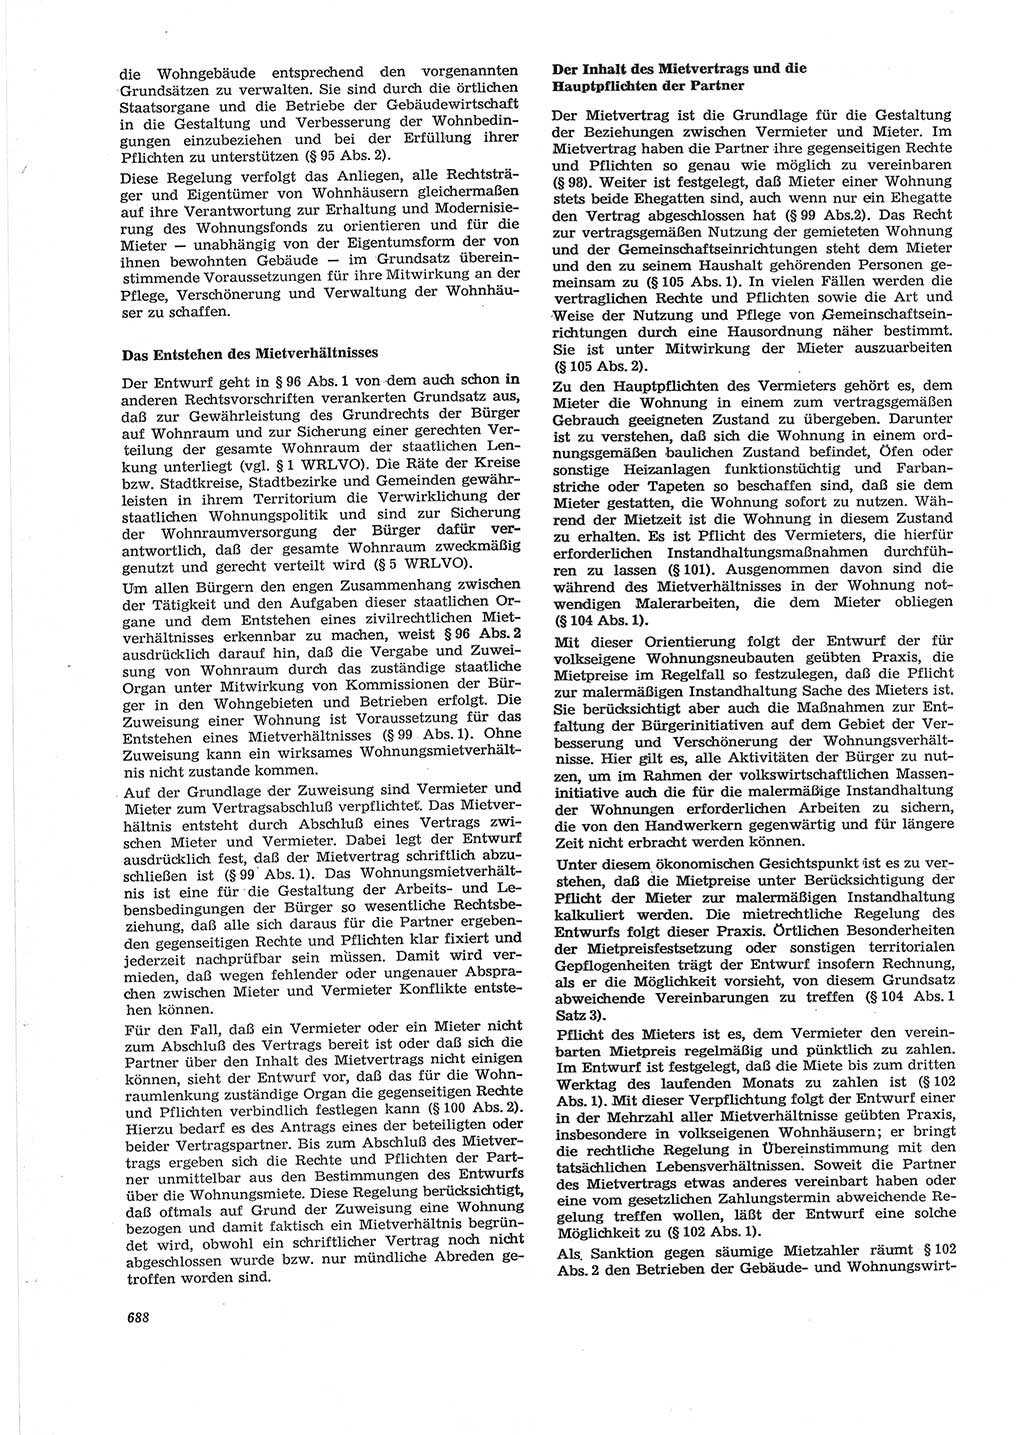 Neue Justiz (NJ), Zeitschrift für Recht und Rechtswissenschaft [Deutsche Demokratische Republik (DDR)], 28. Jahrgang 1974, Seite 688 (NJ DDR 1974, S. 688)